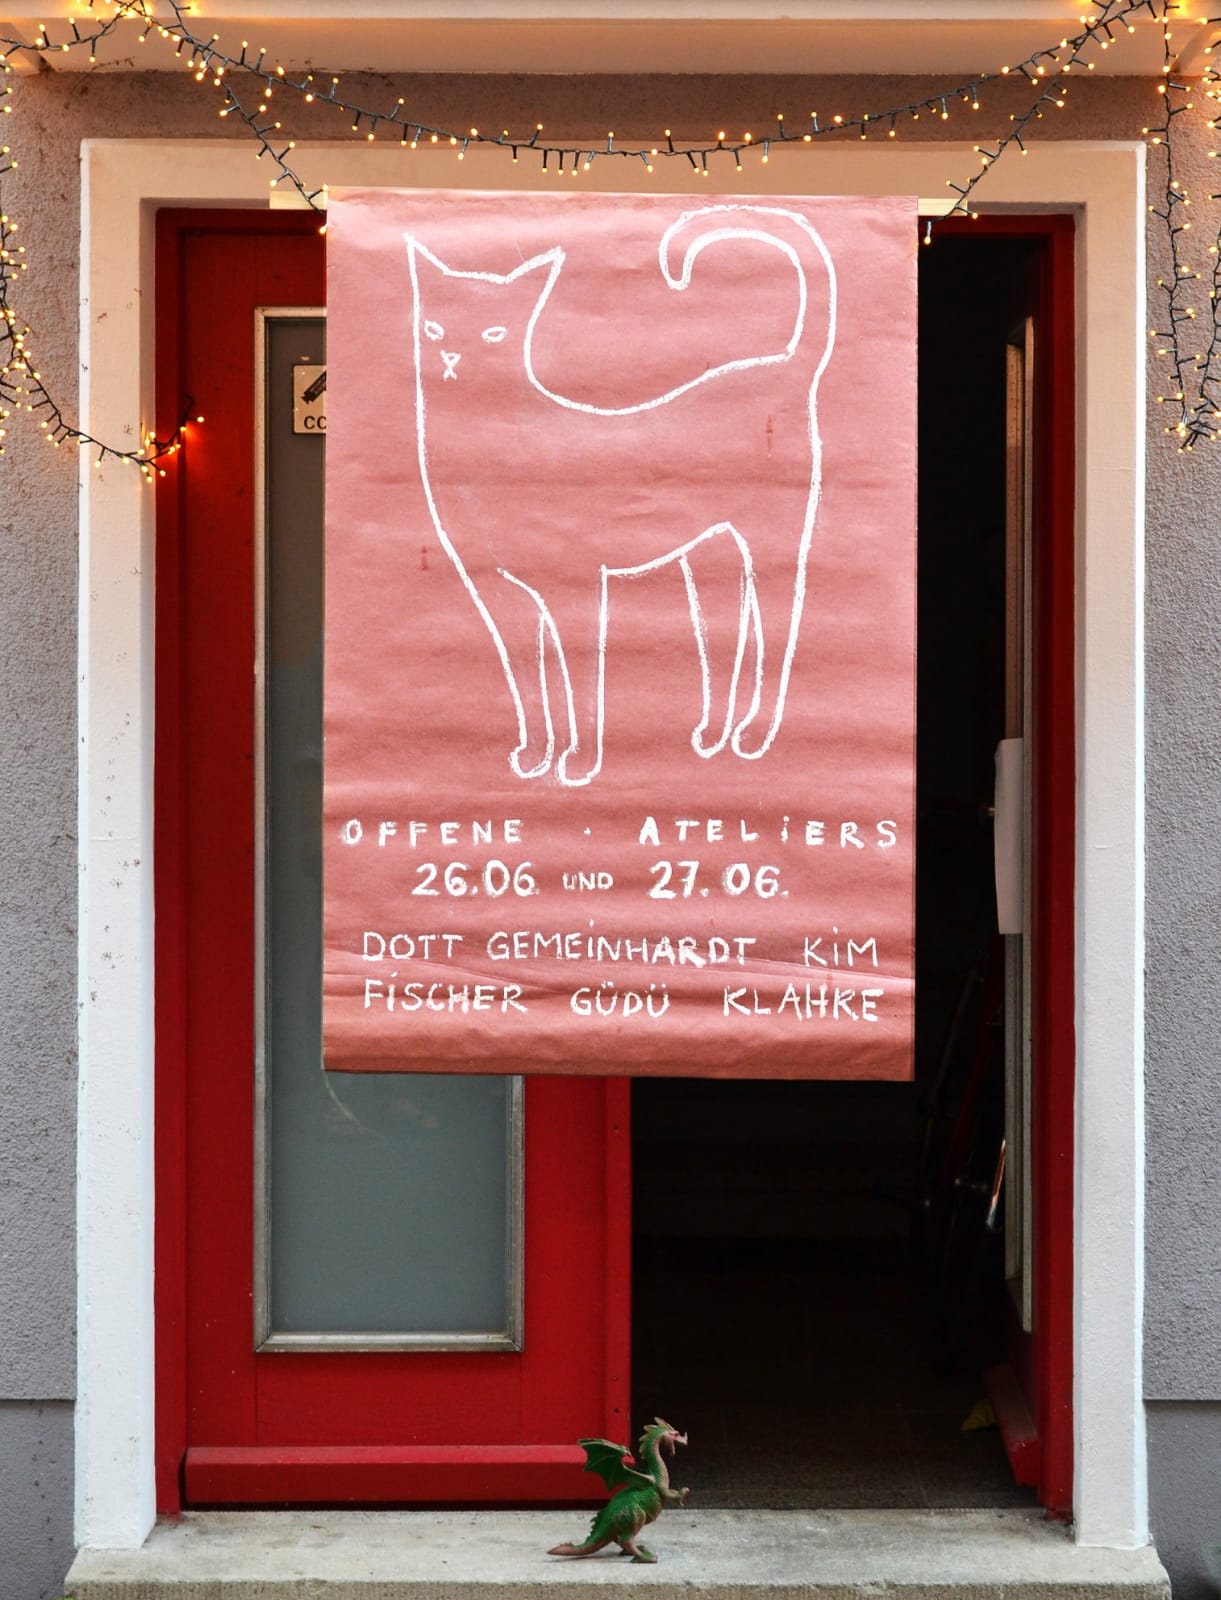 Atelierhaus in der Galgenhofstraße 46 Rg Plakat mit gezeichneter Katze und den Namen der Künstler Fatma Güdü, Kai Klahre, Anne Fischer, David dott, Jan Gemeinhardt, Sejin Kim